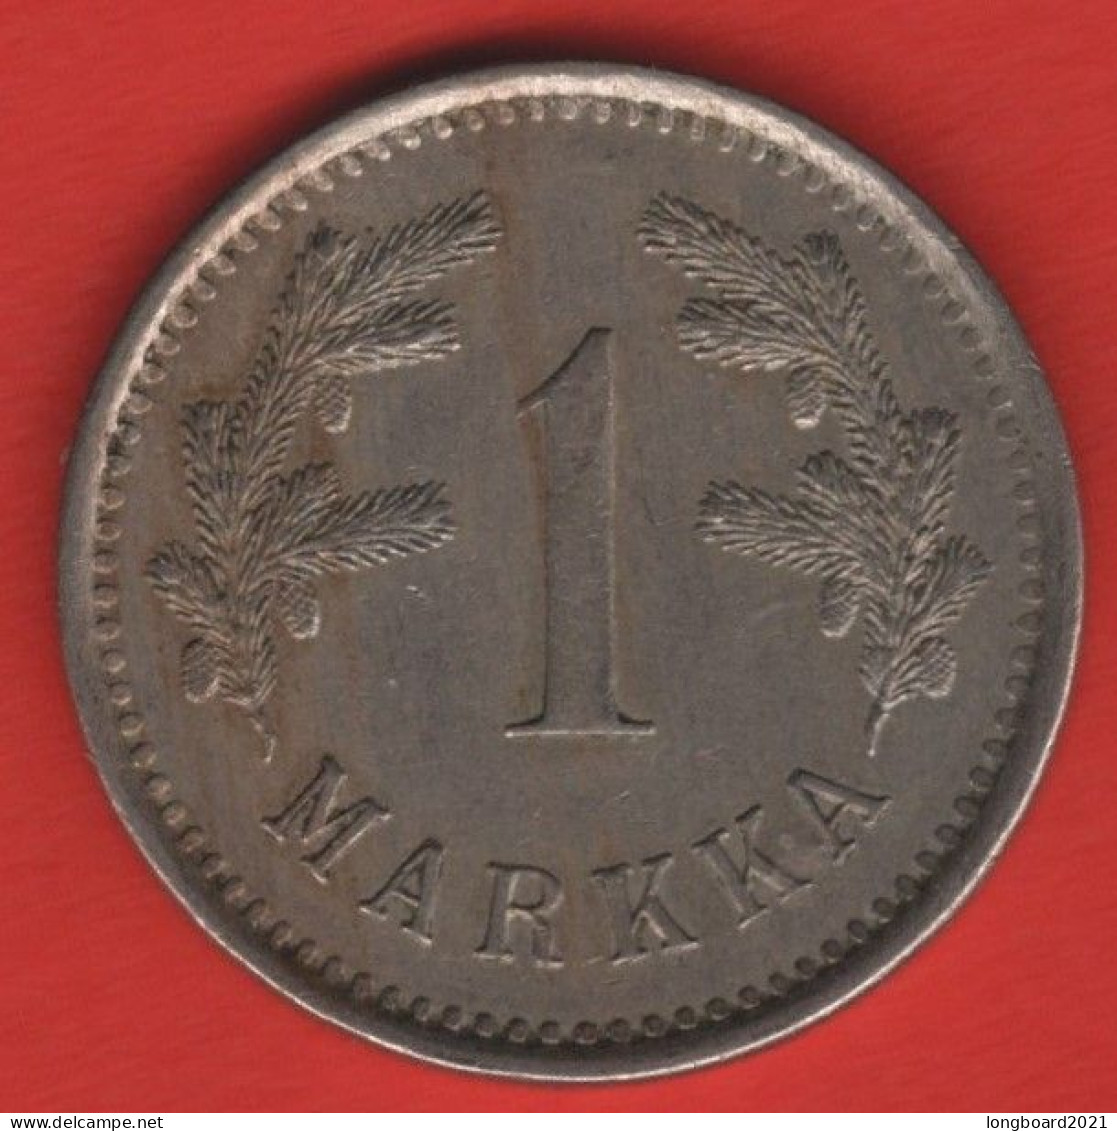 FINLAND - 1 MARKKA 1922 - Finnland